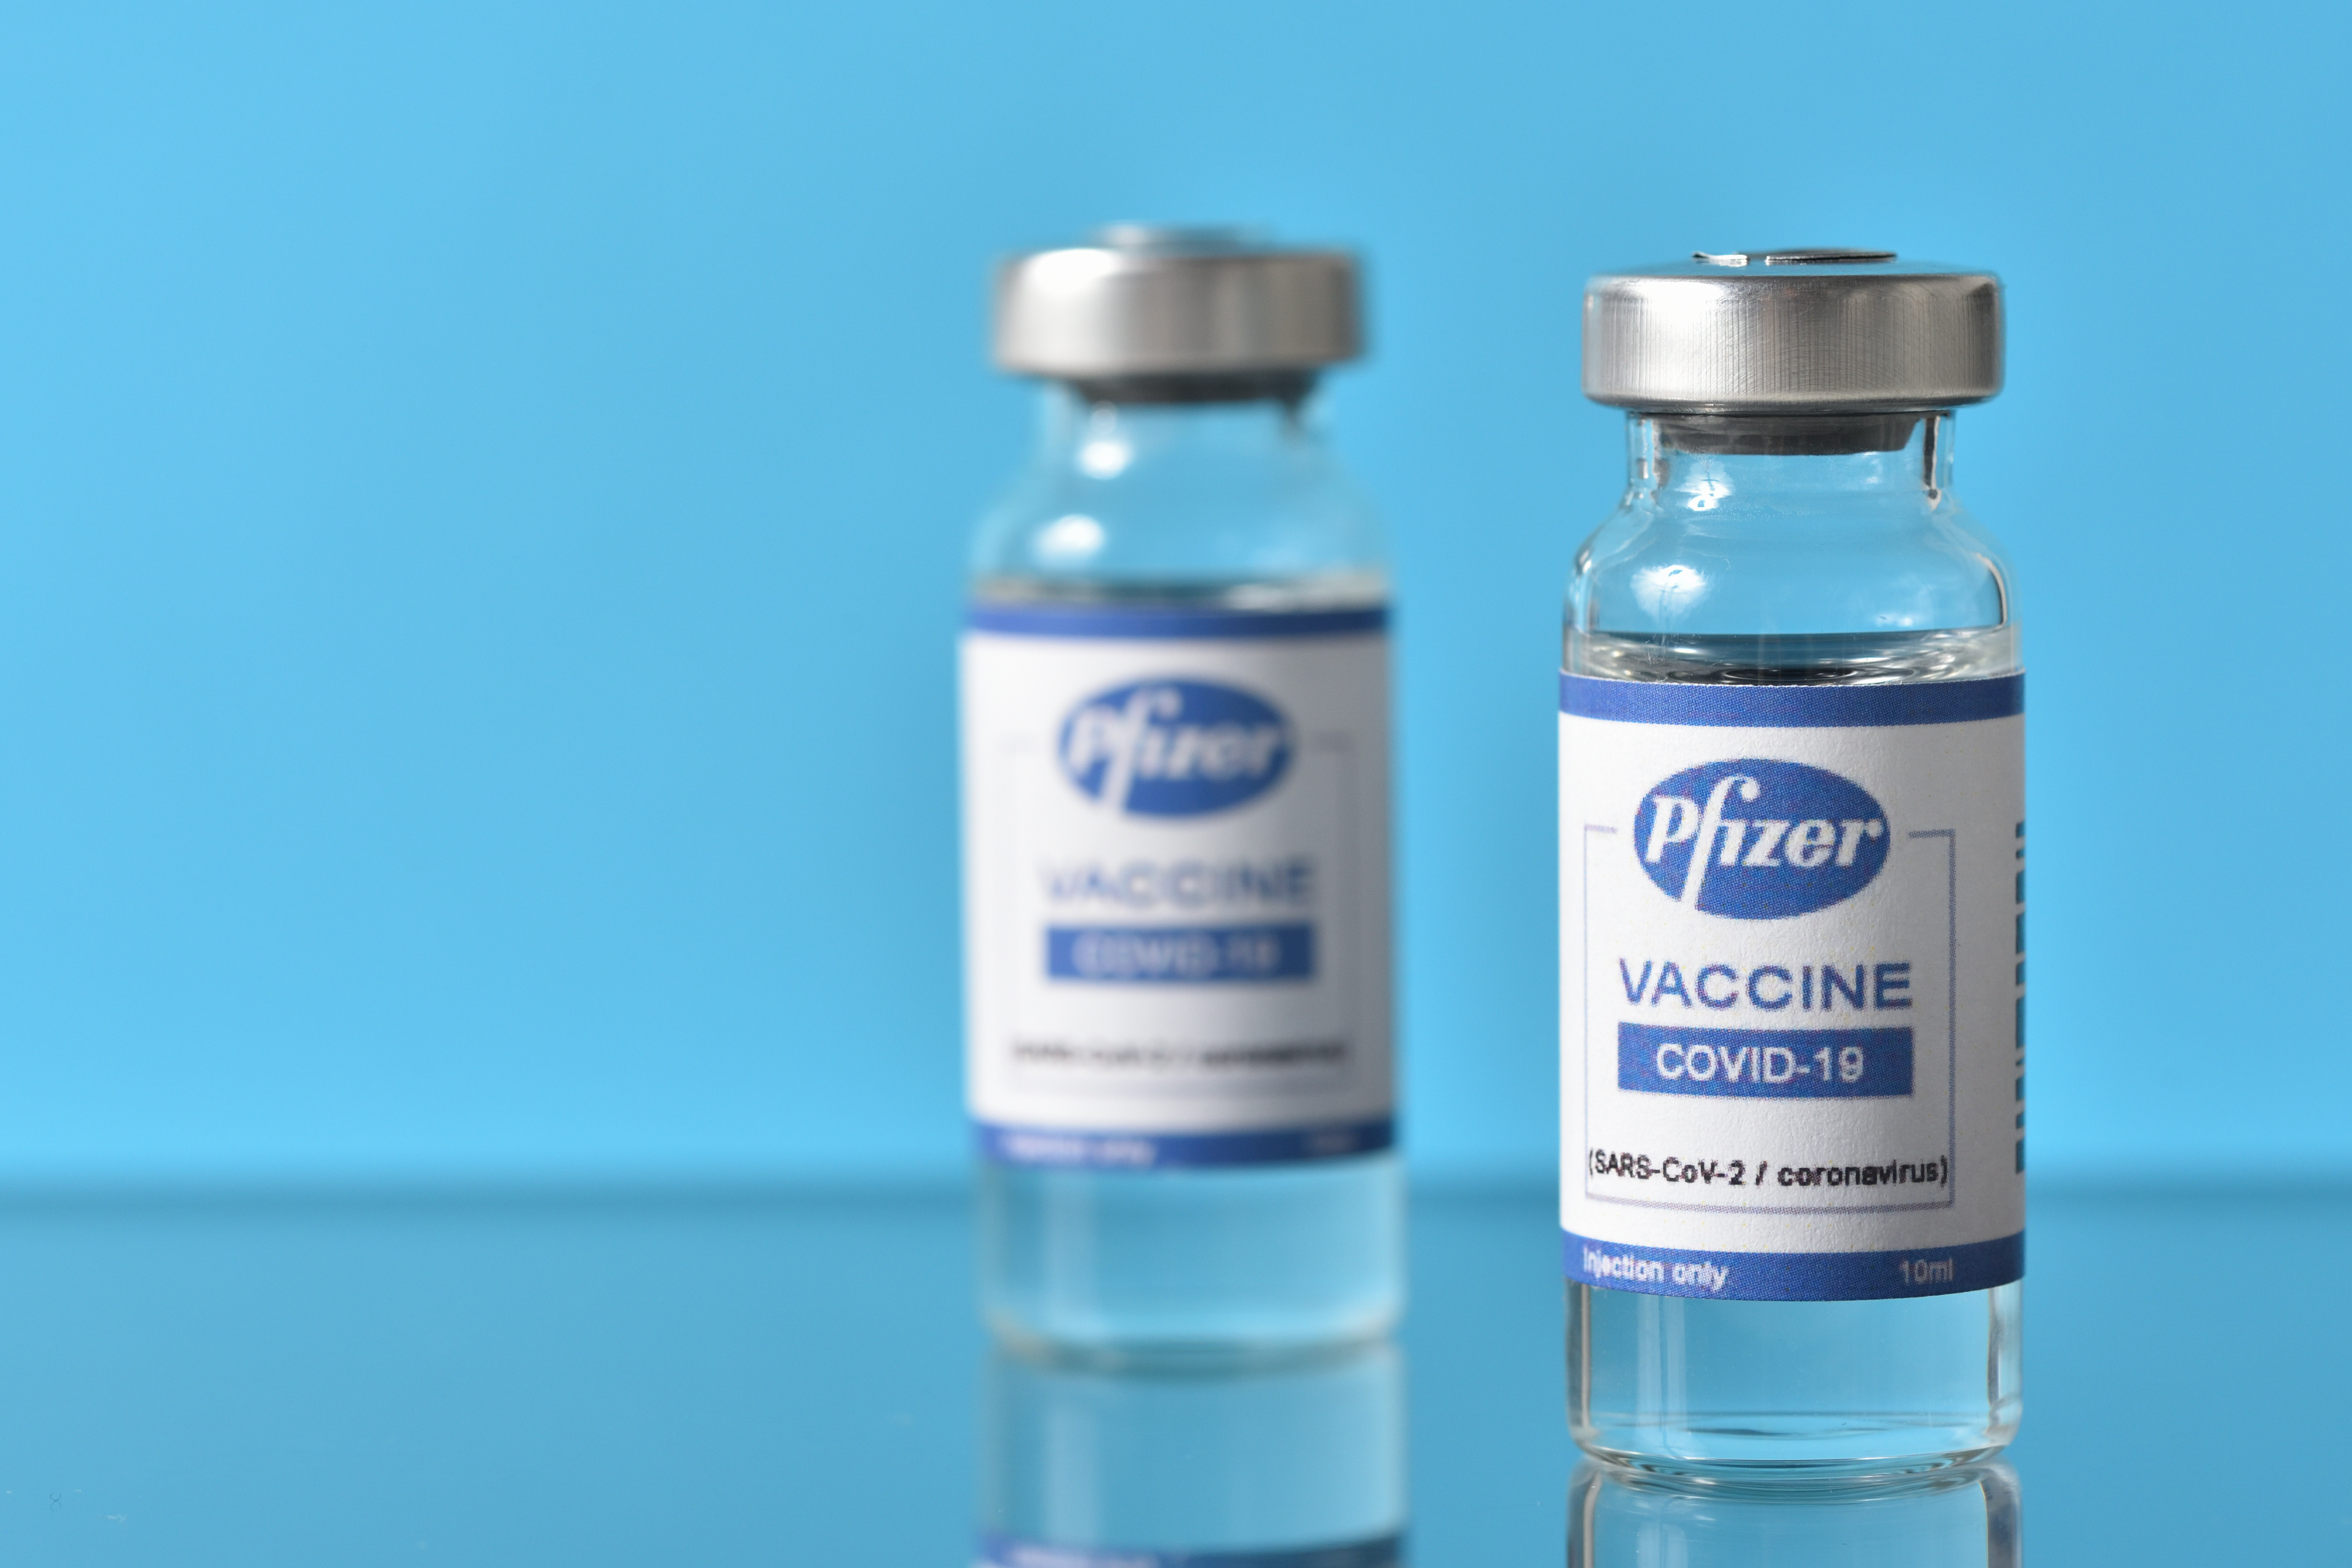 Le vaccin contre la Covid-19 de Pfizer. © pridannikov, Adobe Stock